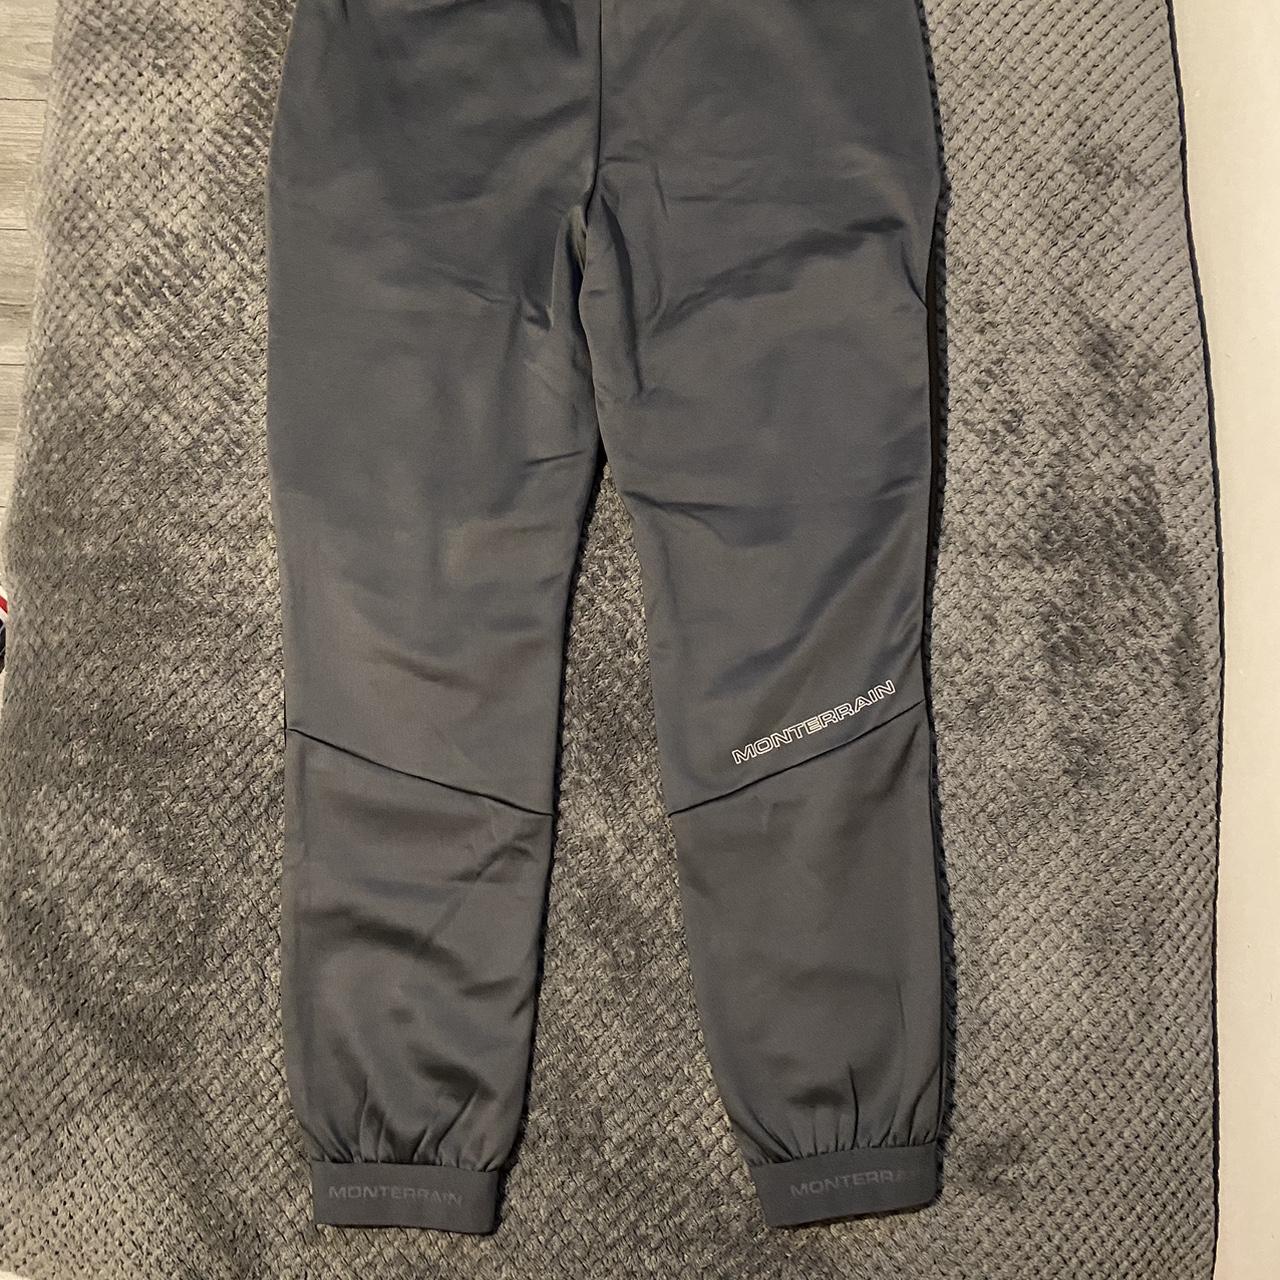 Monterrain pants / trousers / joggers Black Men's - Depop